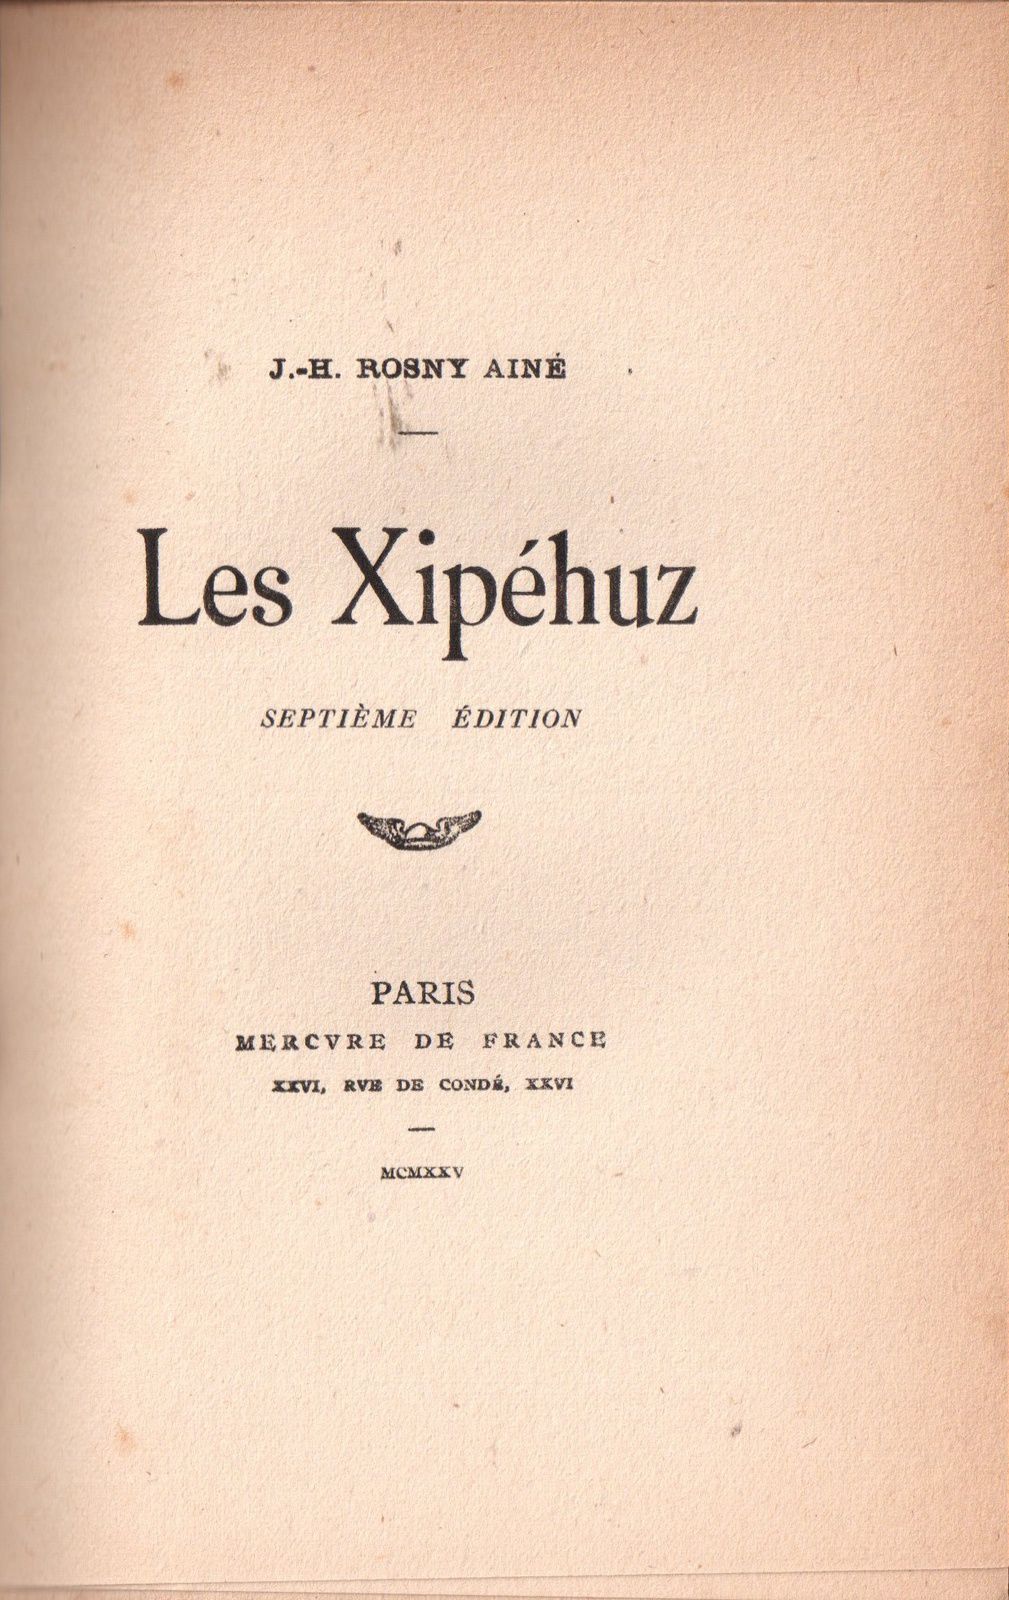 J.-H. Rosny aîné "Les Xipéhuz" (Mercure de France - 1925)